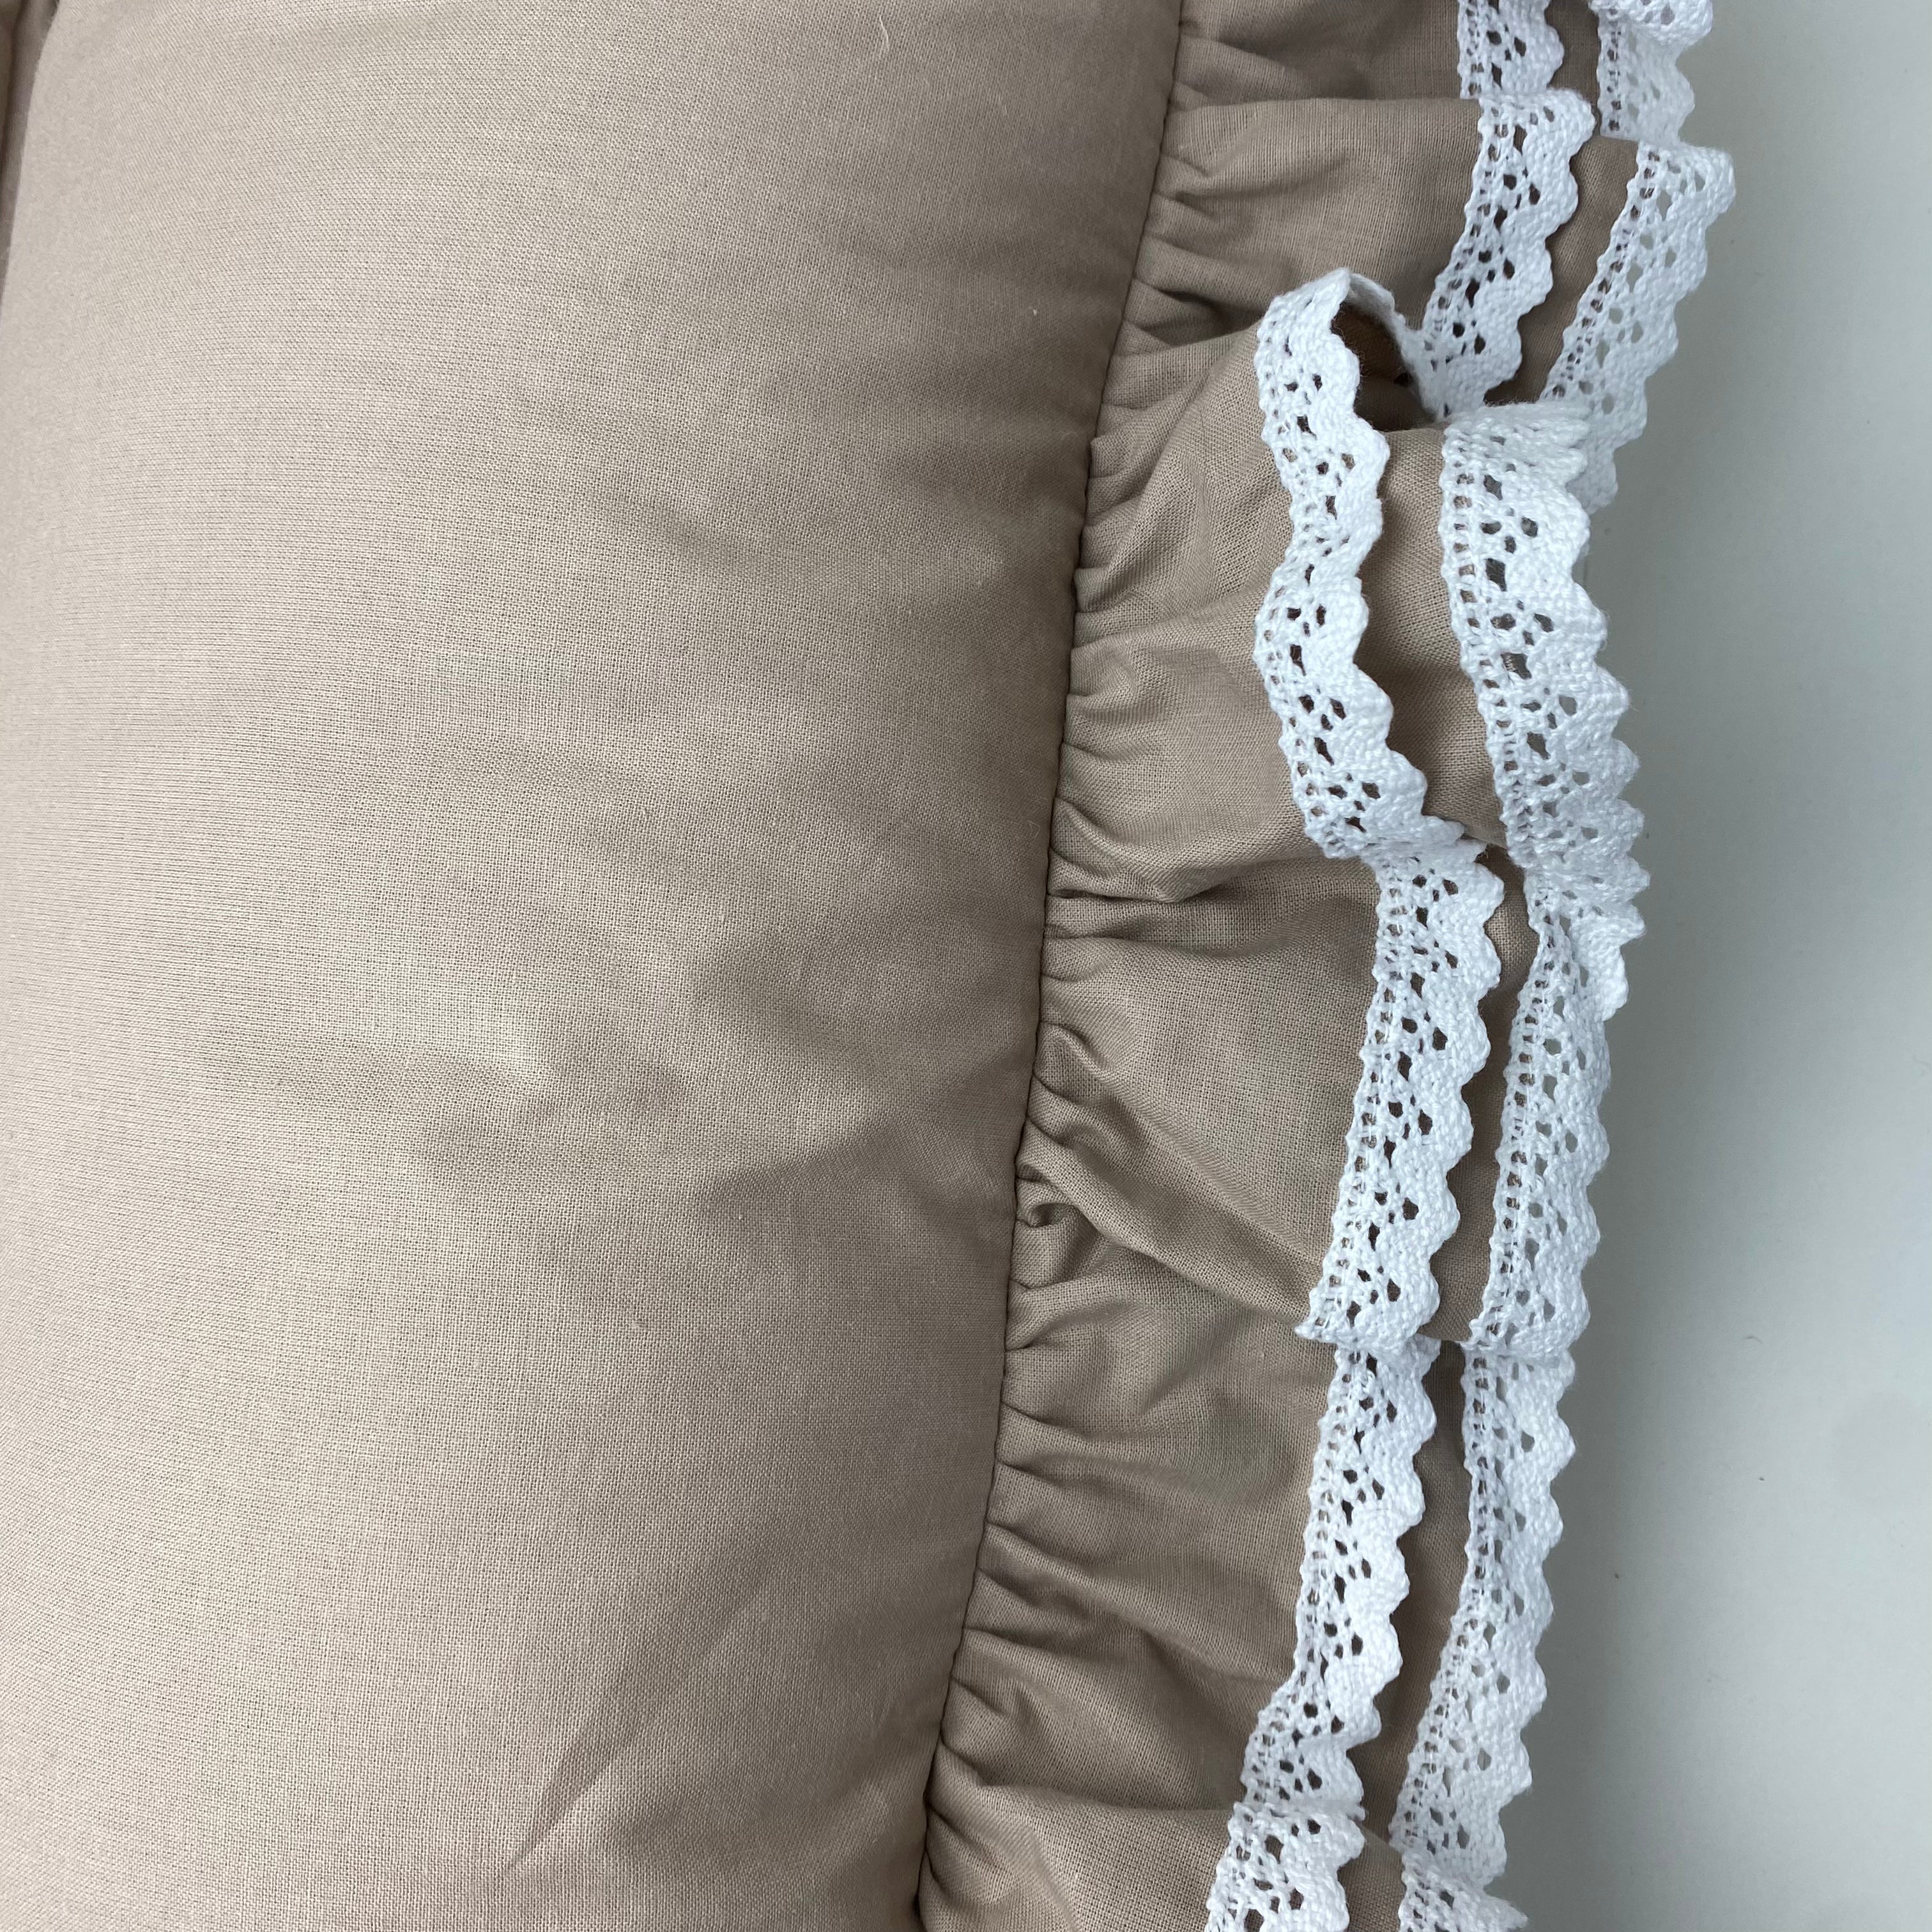 Wickelauflage Romantic mit Rüschen & weißer Spitze | Farbe Beige | 85x75 cm